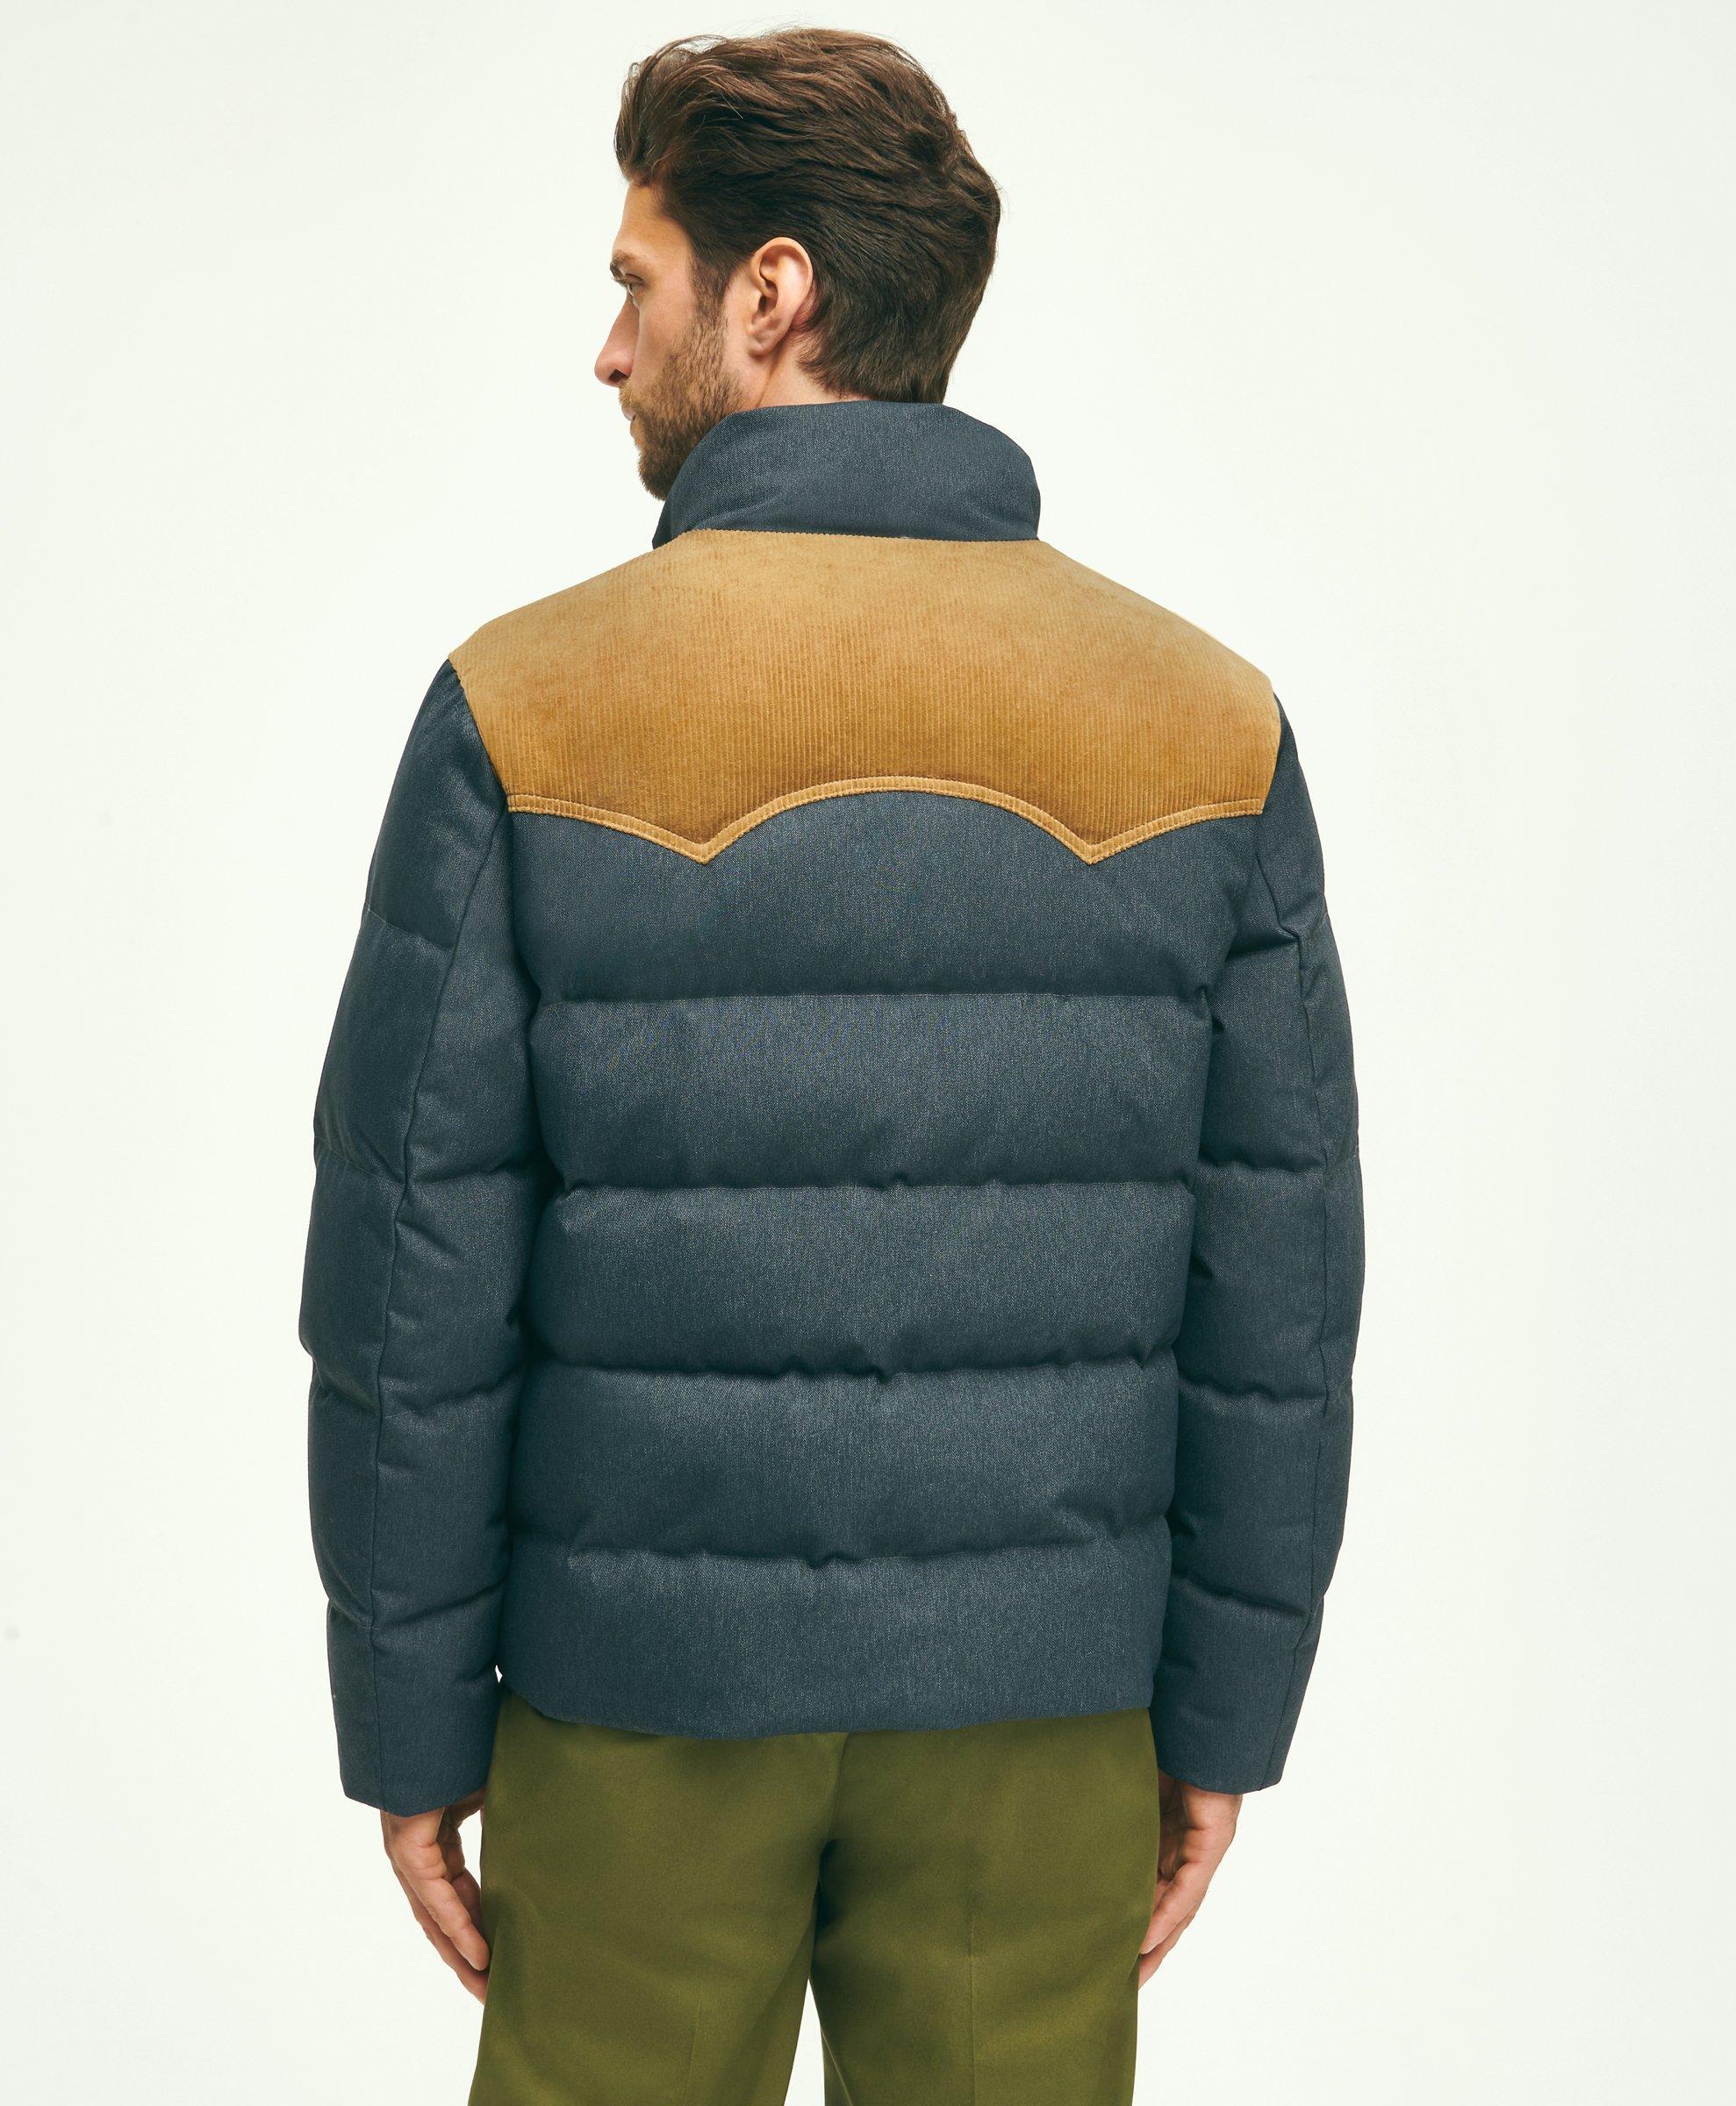 KidSuper Men's Checkered Puffer Jacket, Blue, Men's, XL, Coats Jackets & Outerwear Winter Coats Parkas & Puffer Coats